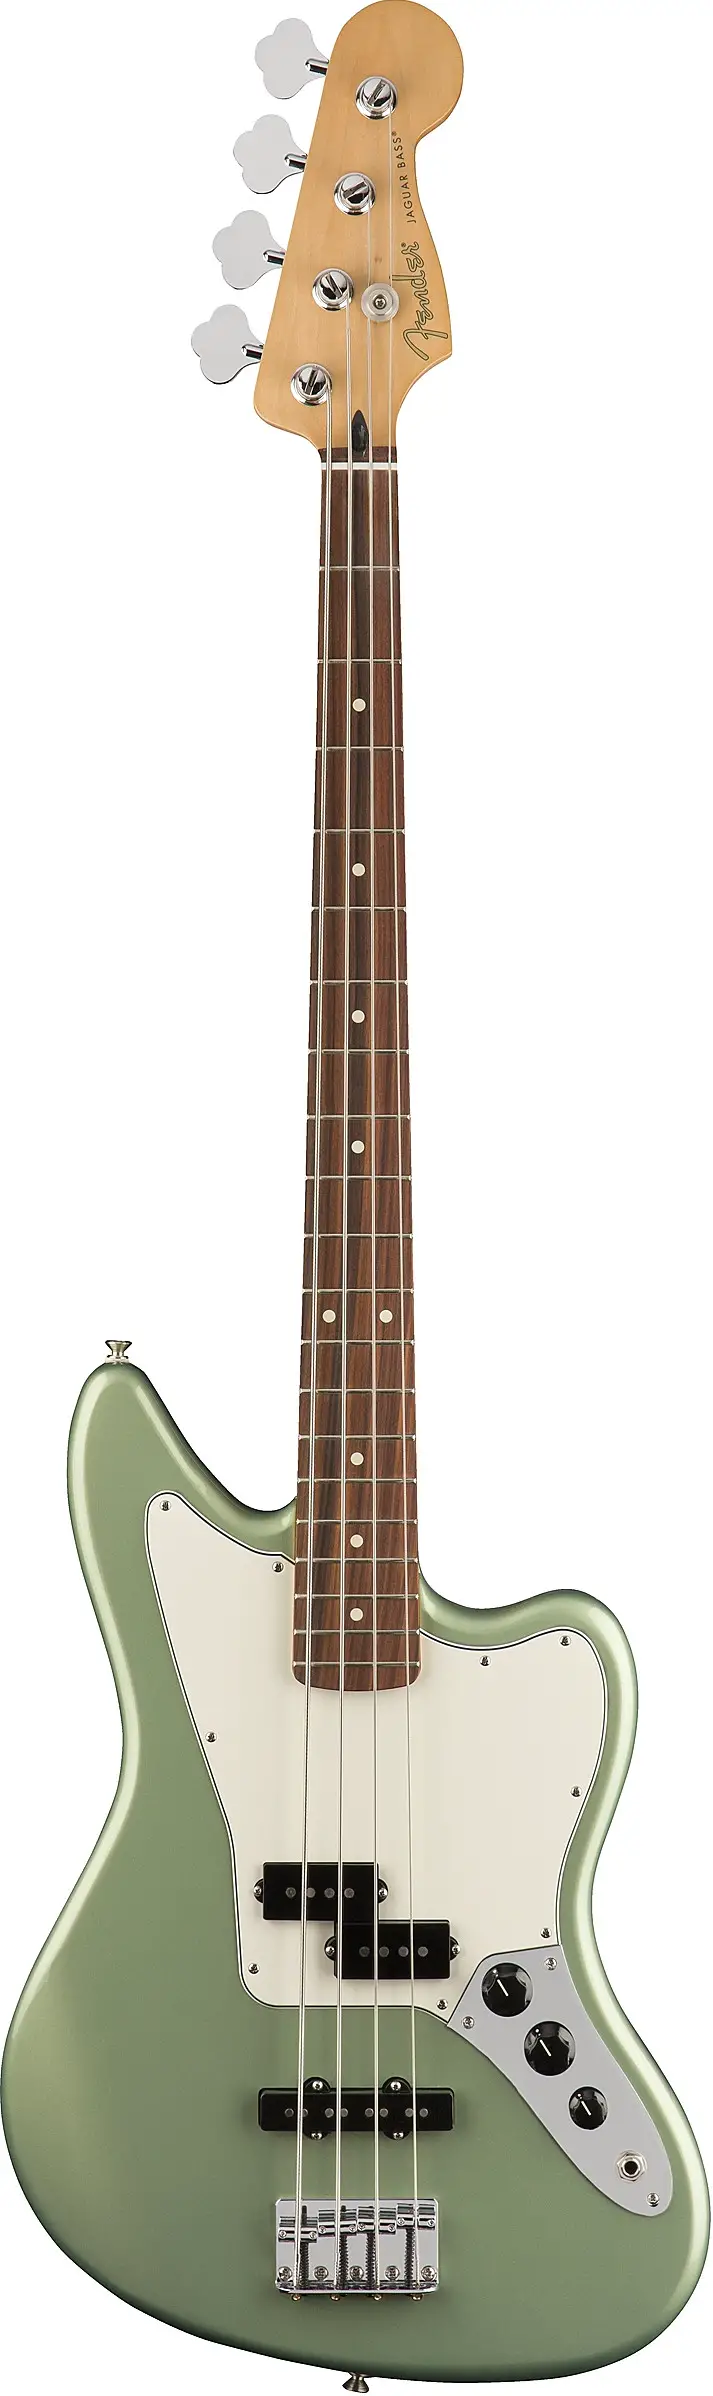 Player Jaguar Bass� by Fender